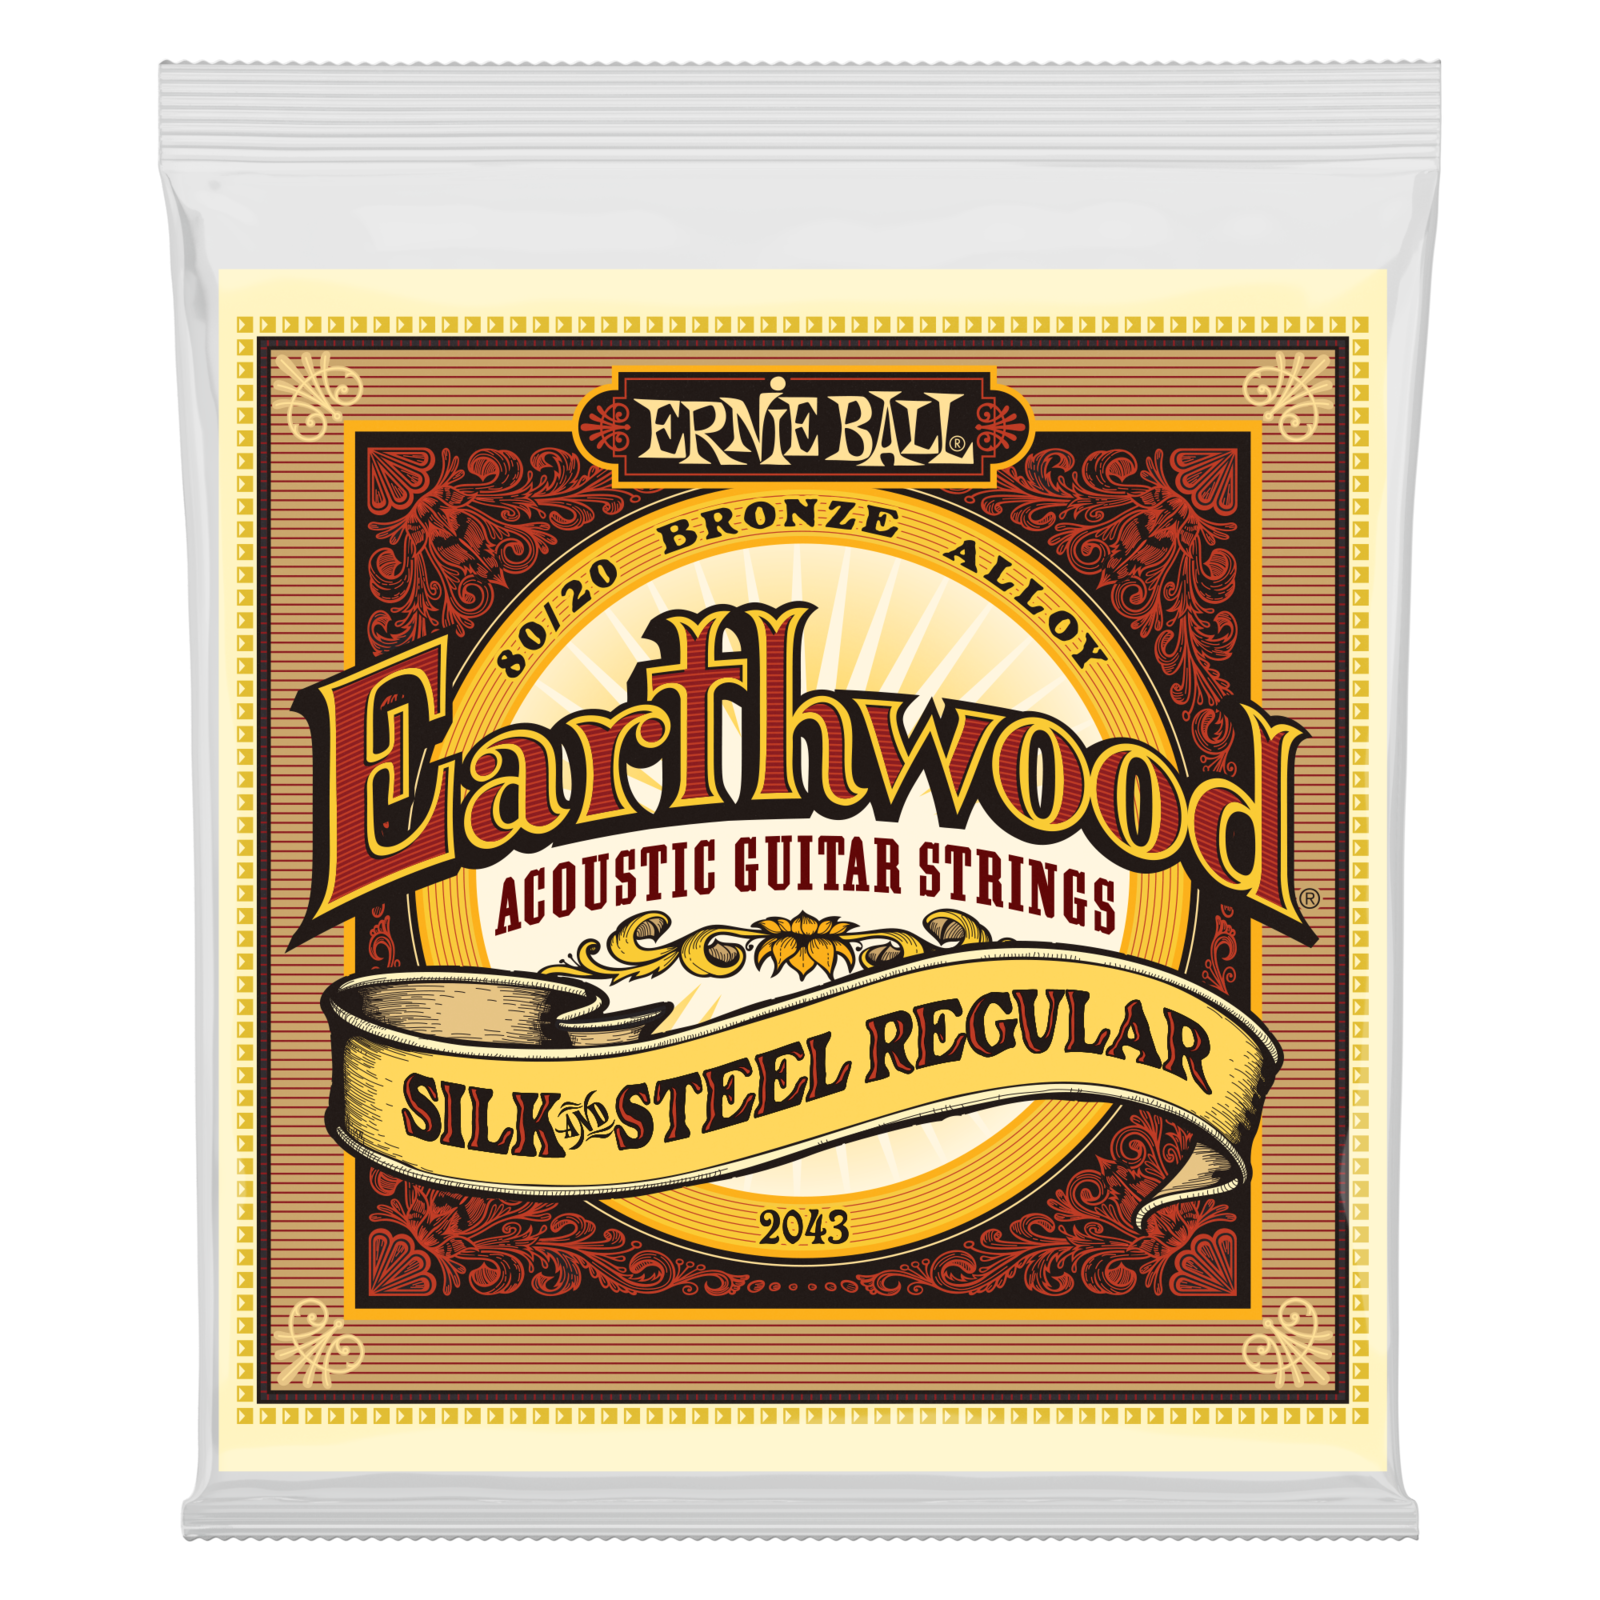 Snaren voor akoestische gitaar Ernie Ball 2043 Earthwood Silk & Steel